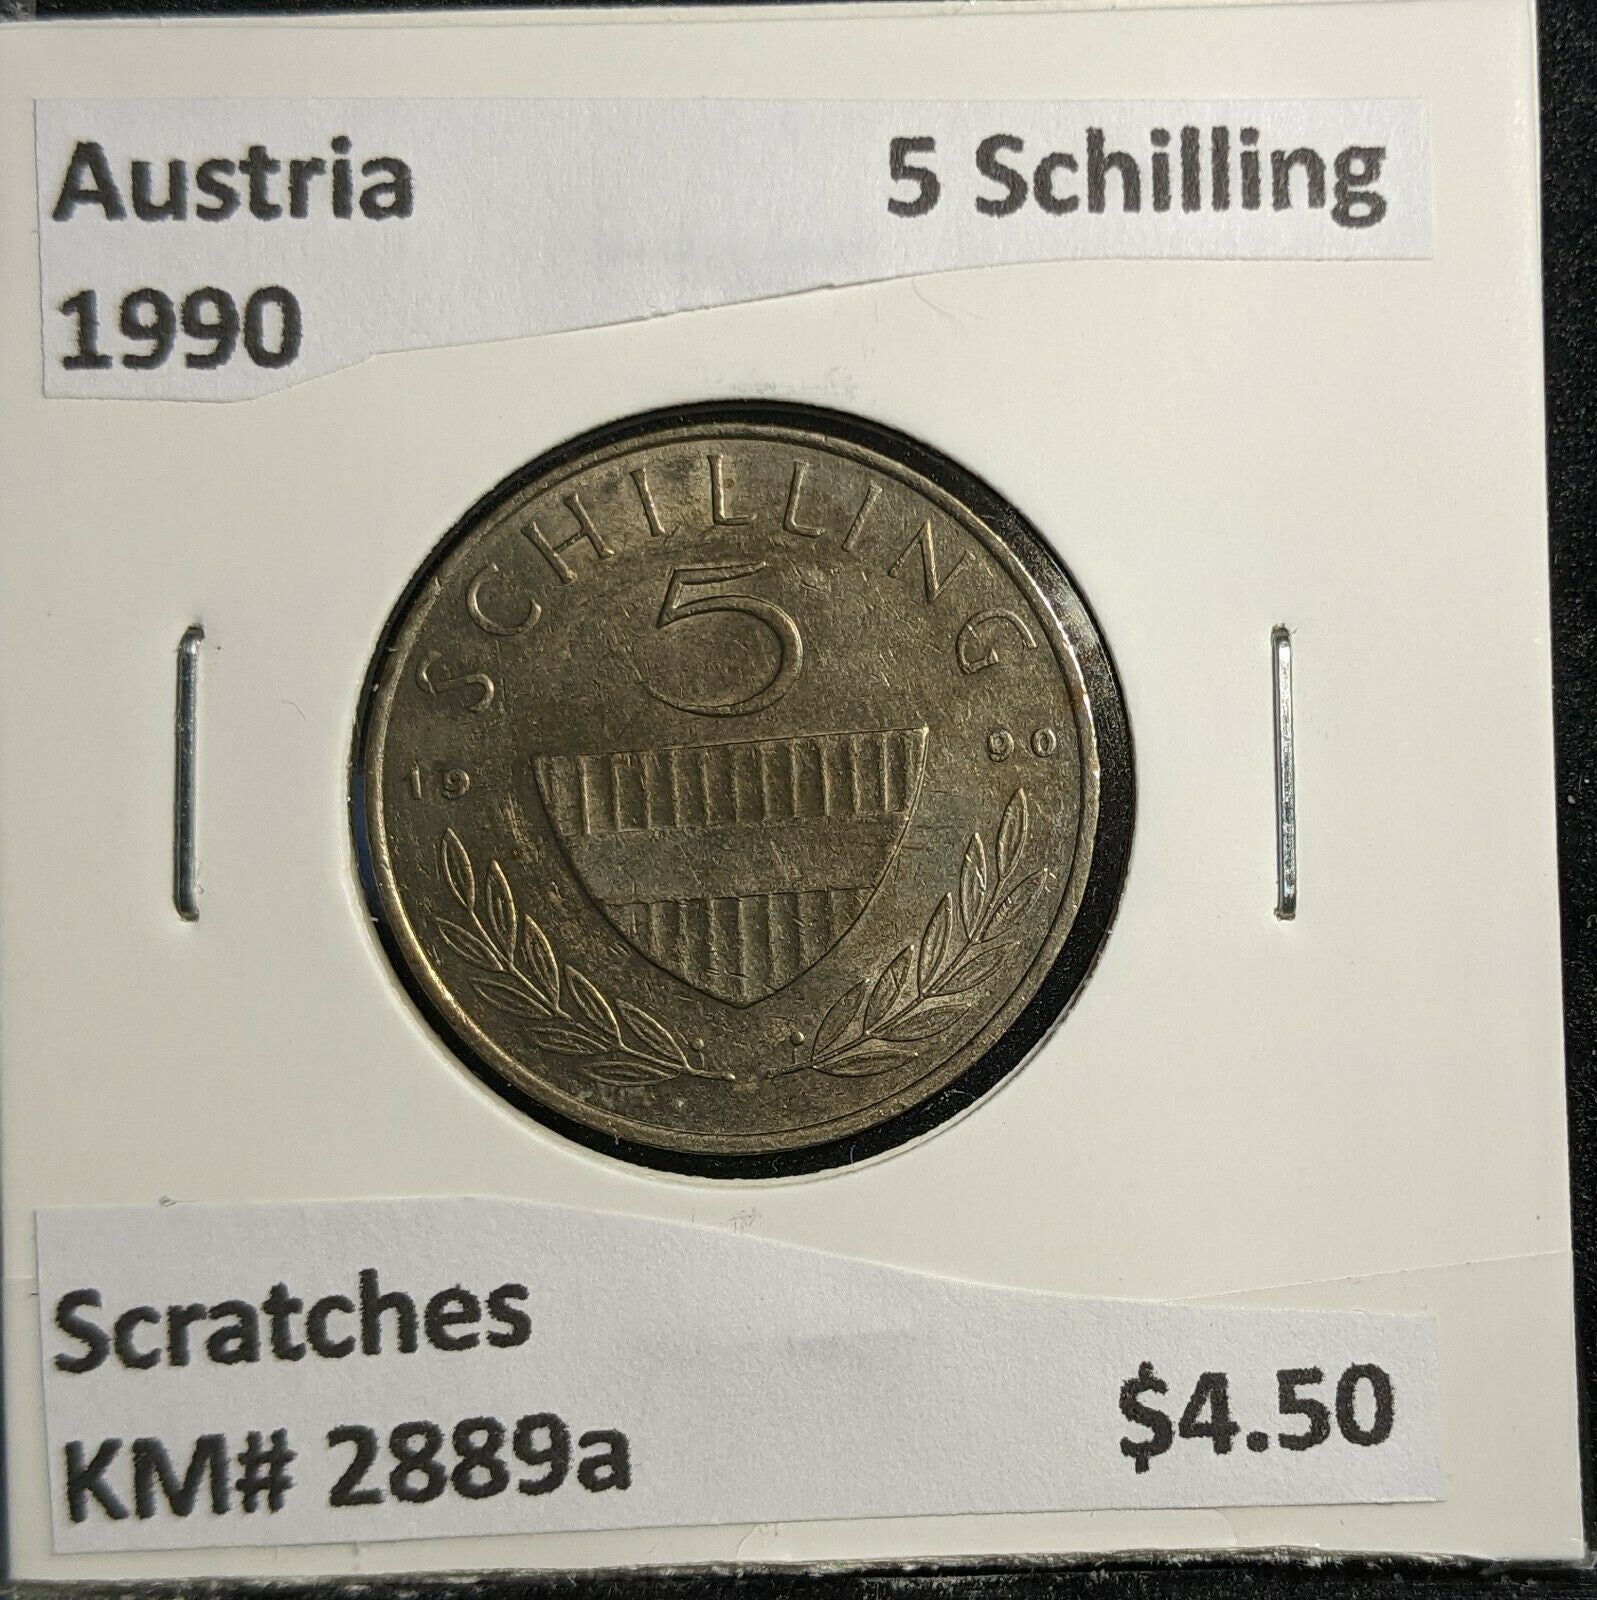 Austria 1990 5 Schilling KM# 2889a Scratches #332 2B